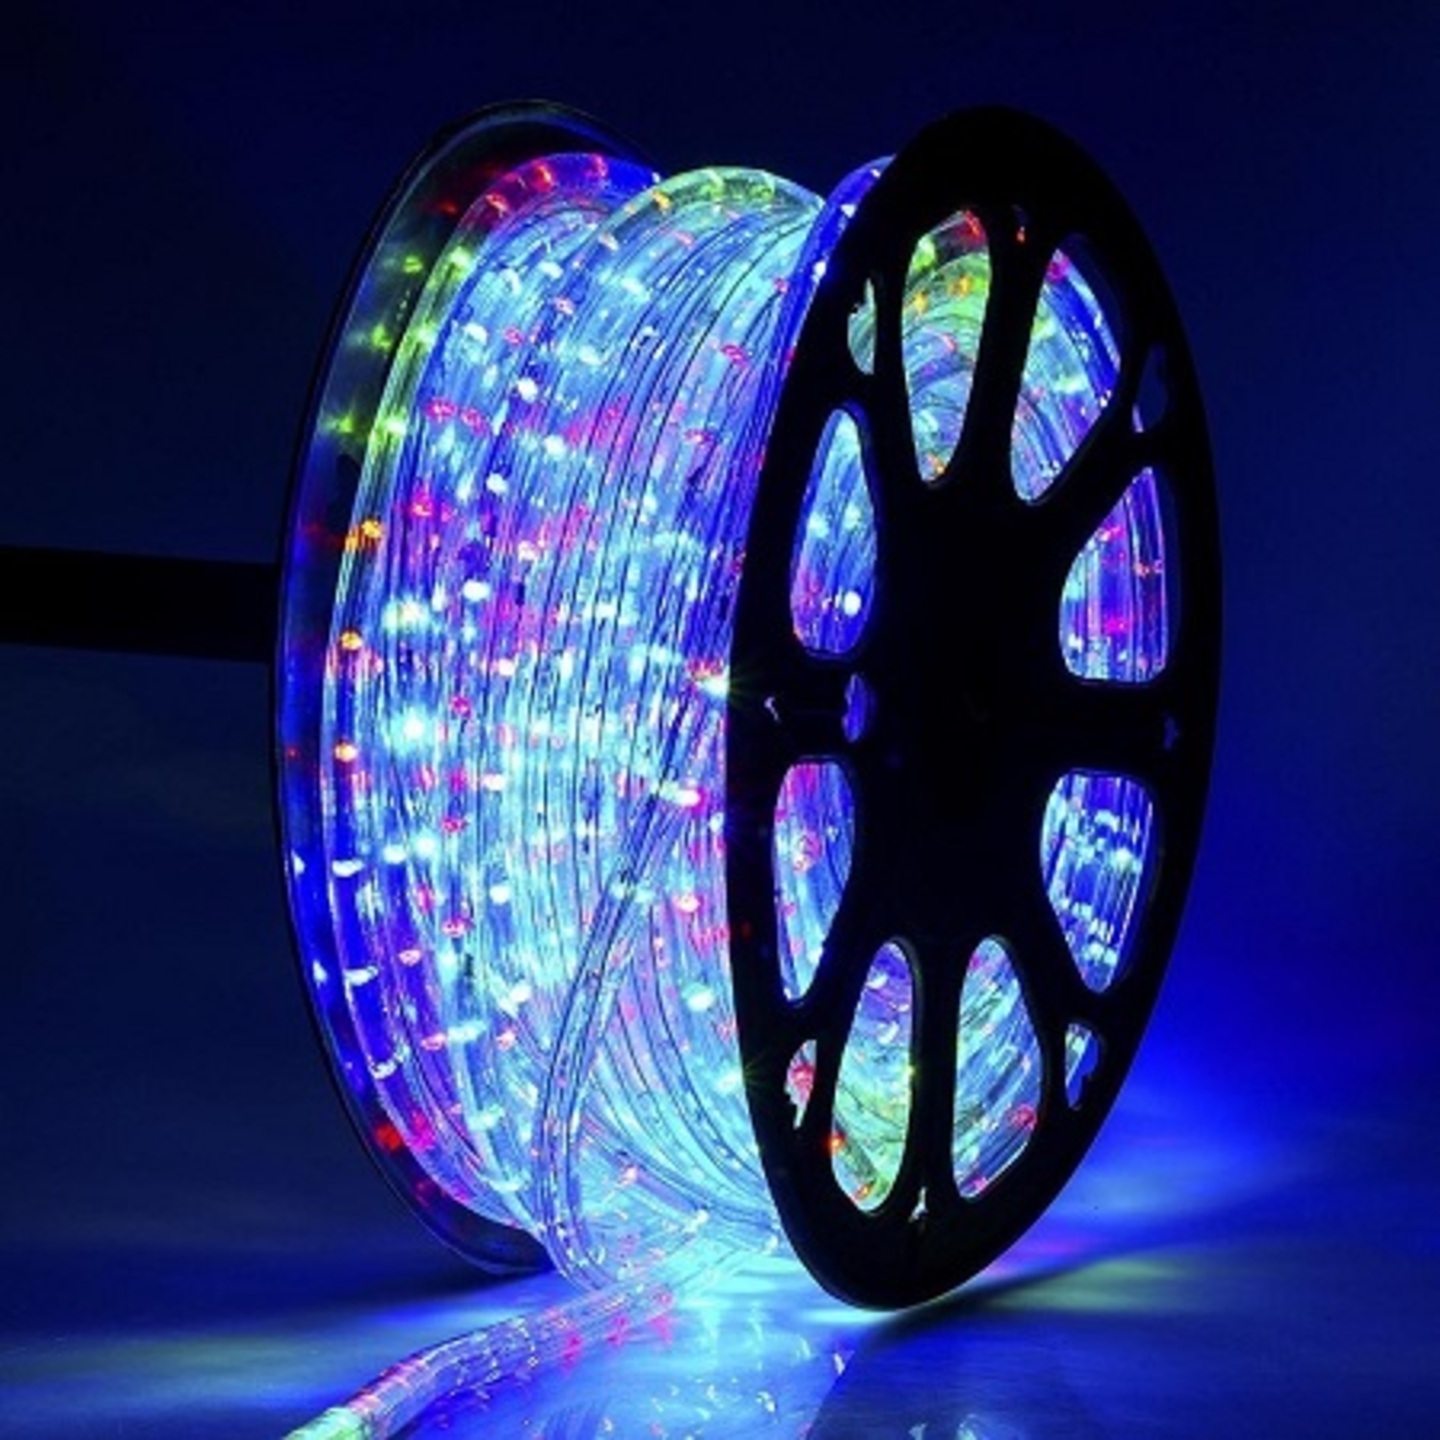 20 Meter Waterproof RGB LED Rope Light